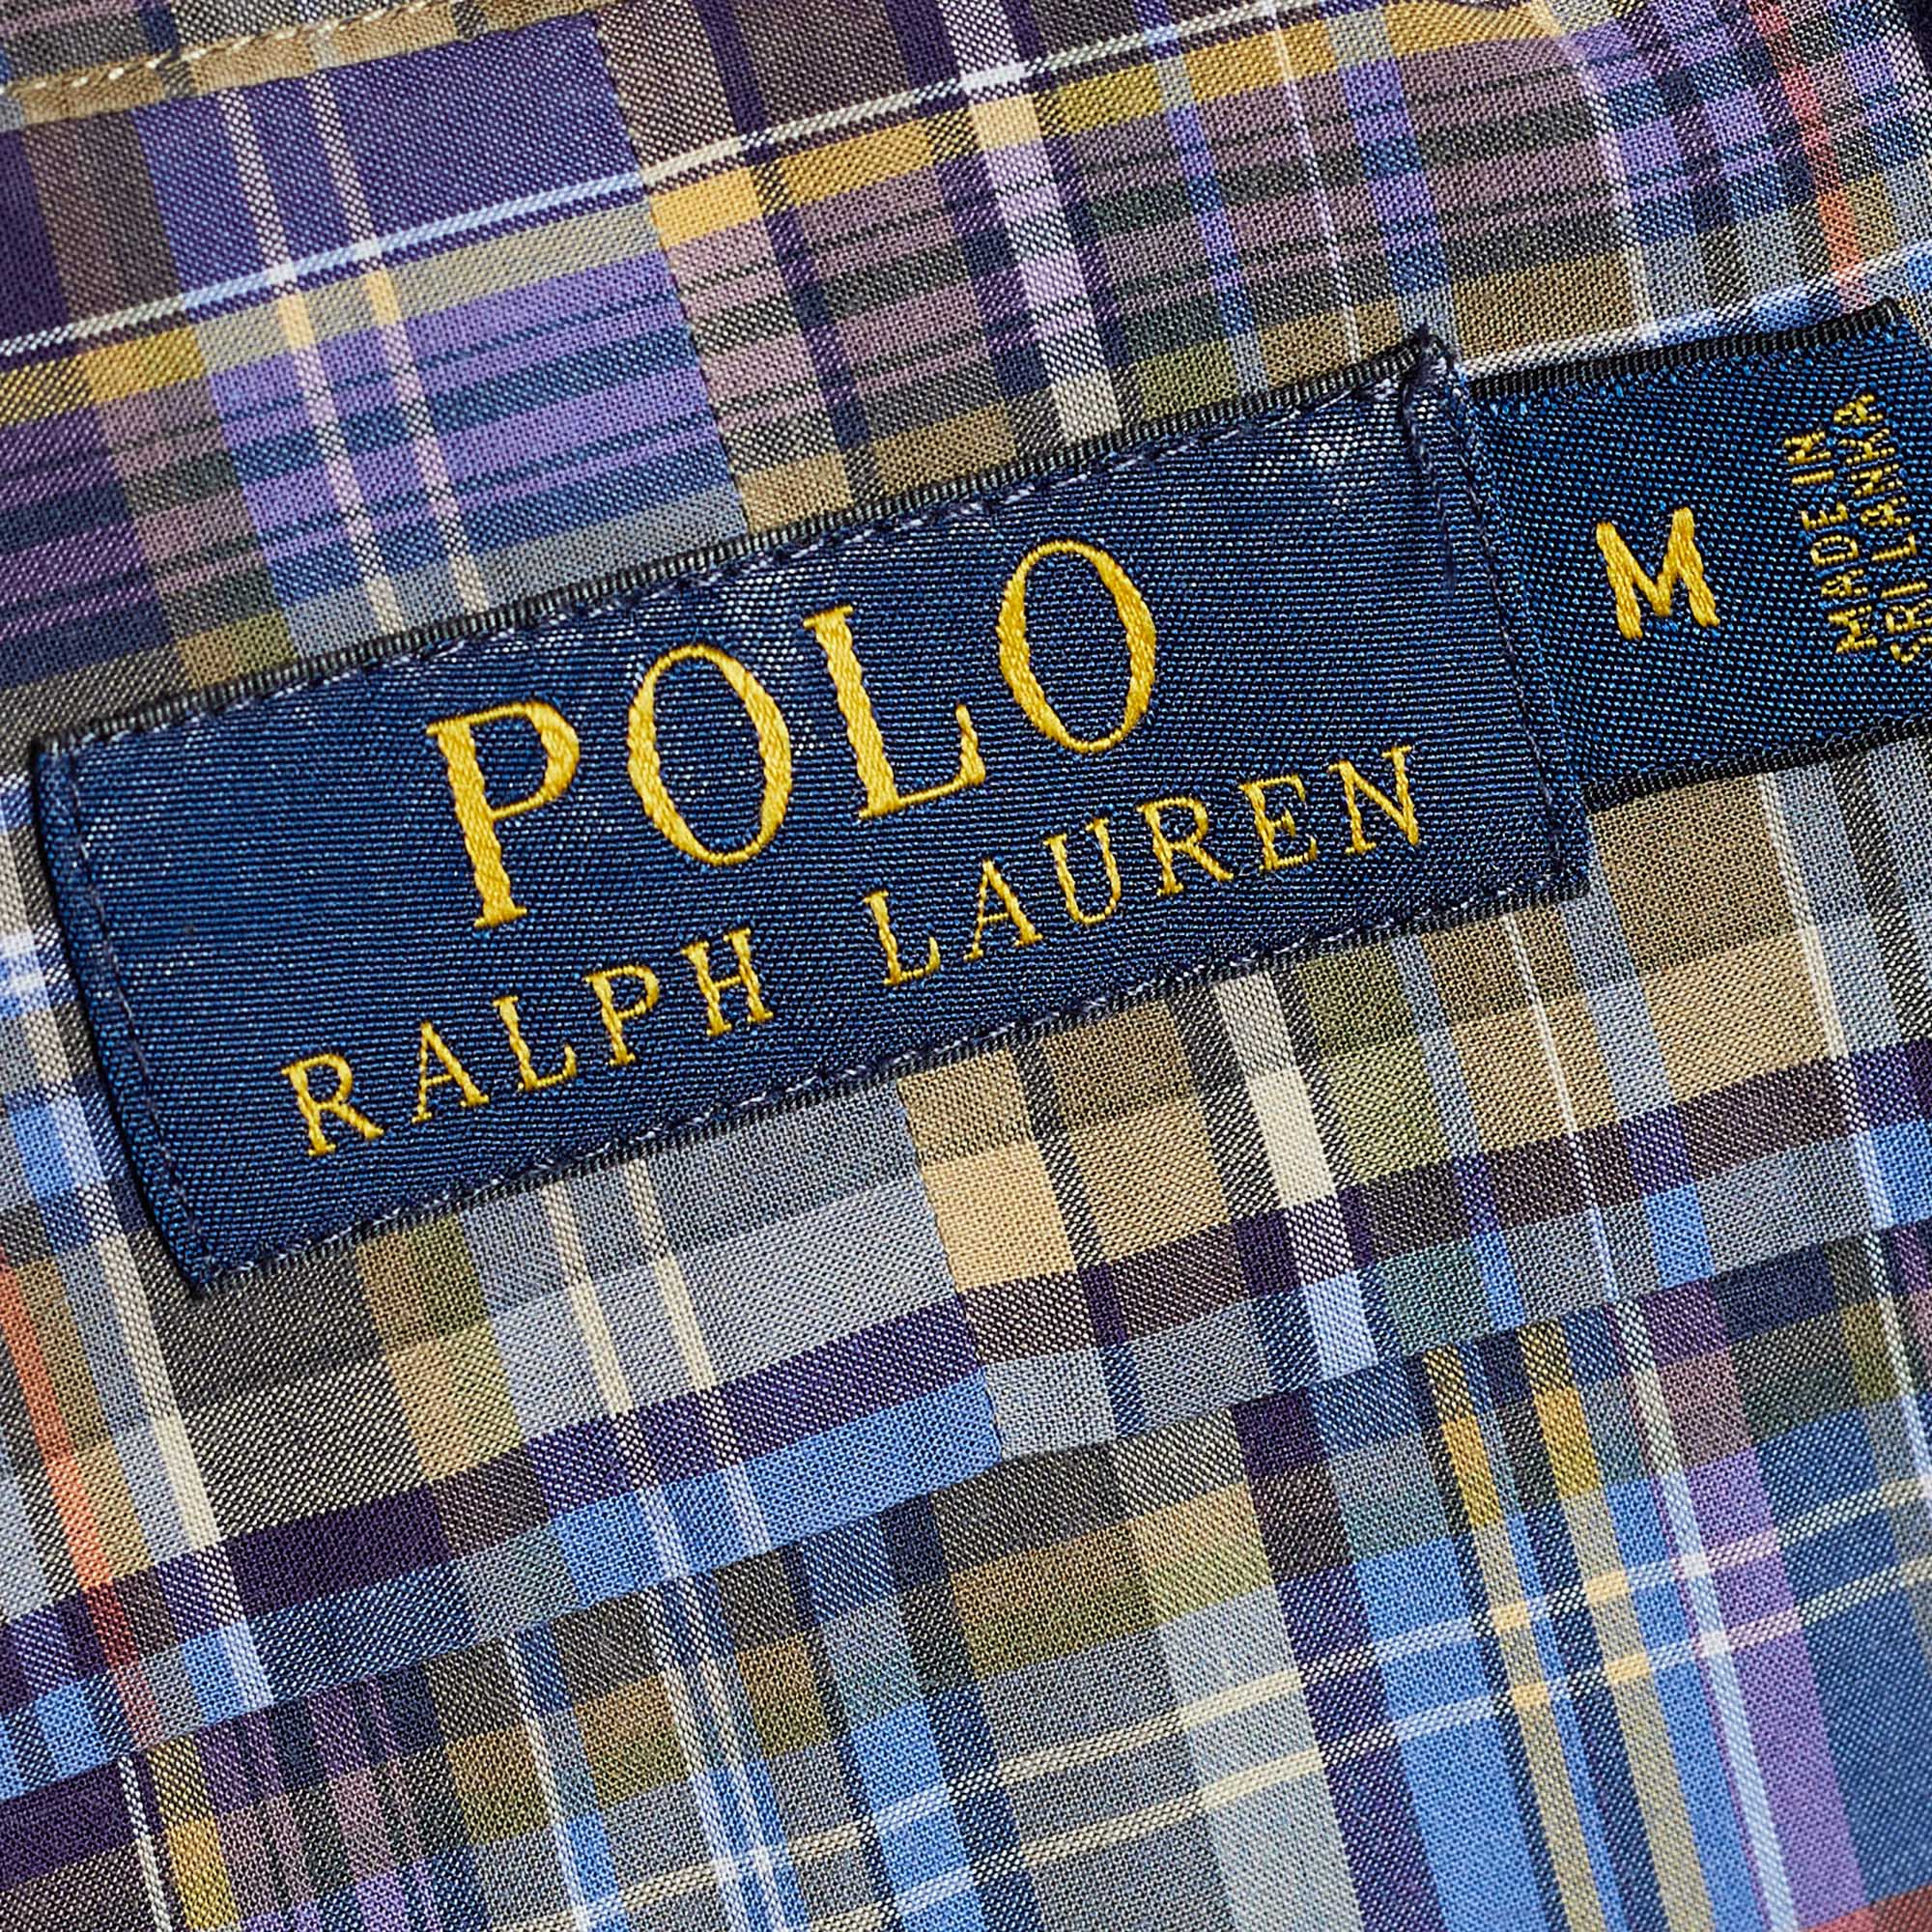 Polo Ralph Lauren Multicolor Madras Check Cotton Button Front Shirt M